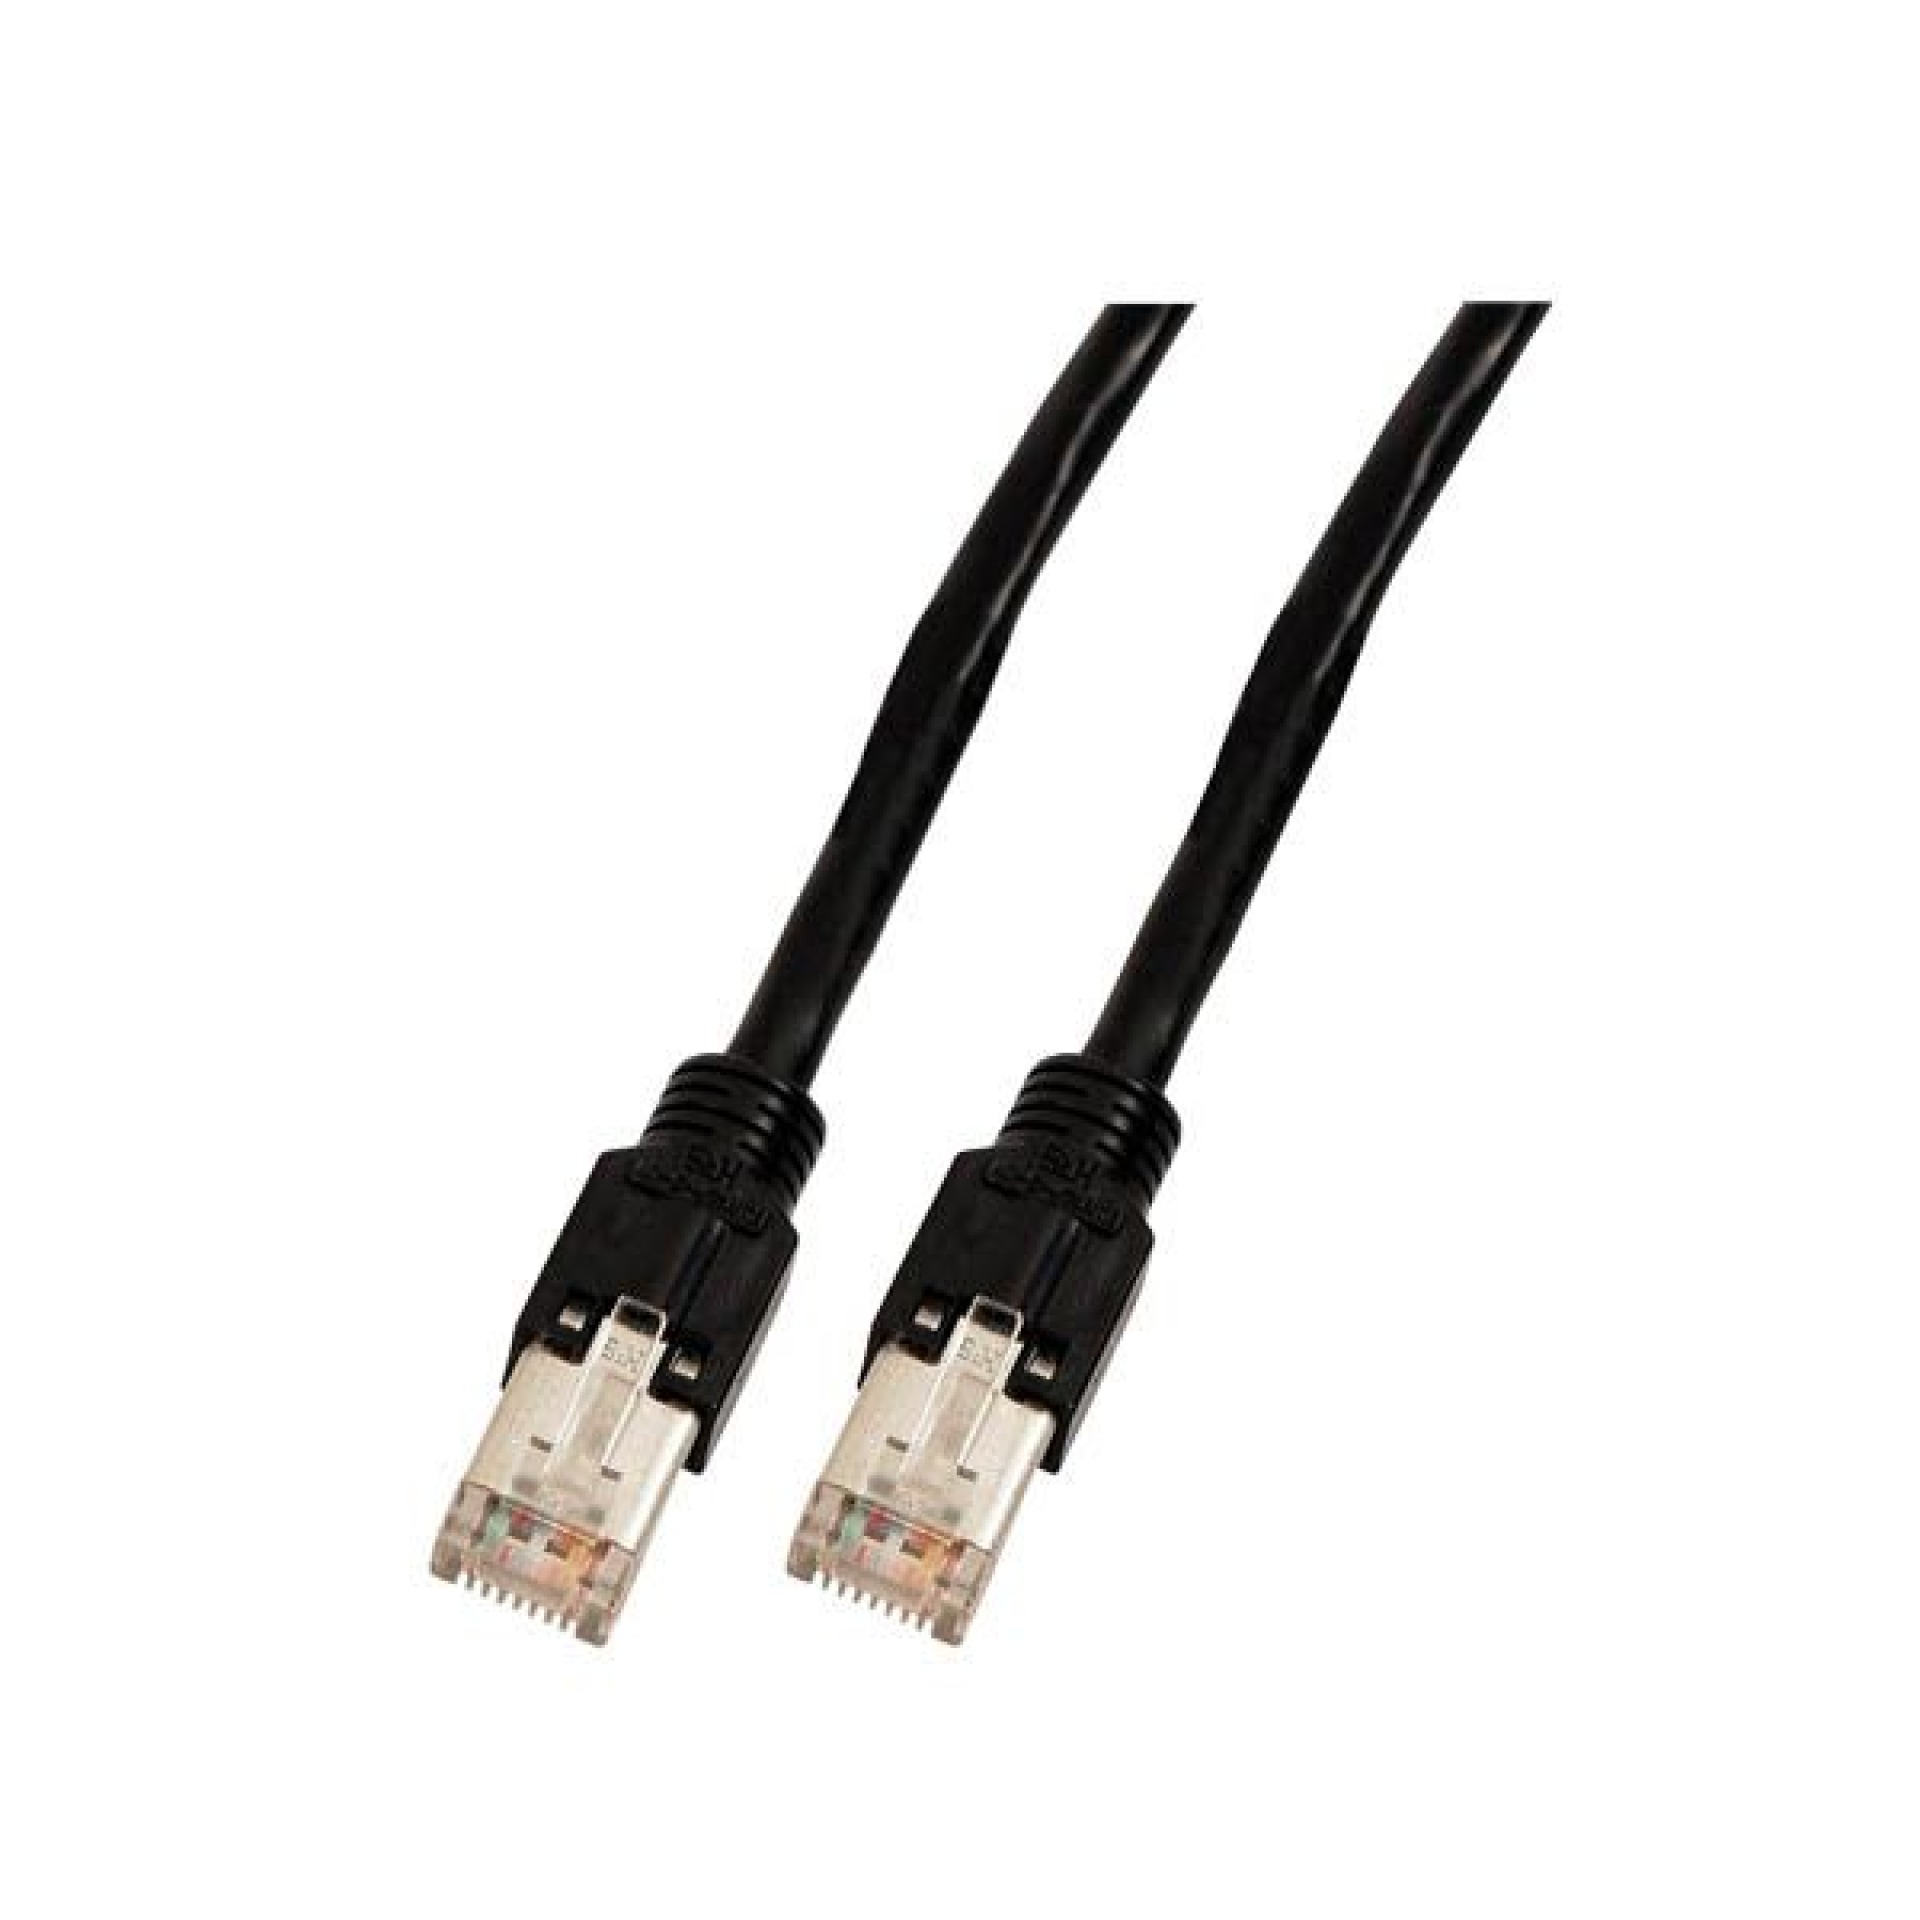 RJ45 Patch cable S/UTP, Cat.5e, TM11, Dätwyler CU 5502 PVC, 2m, black